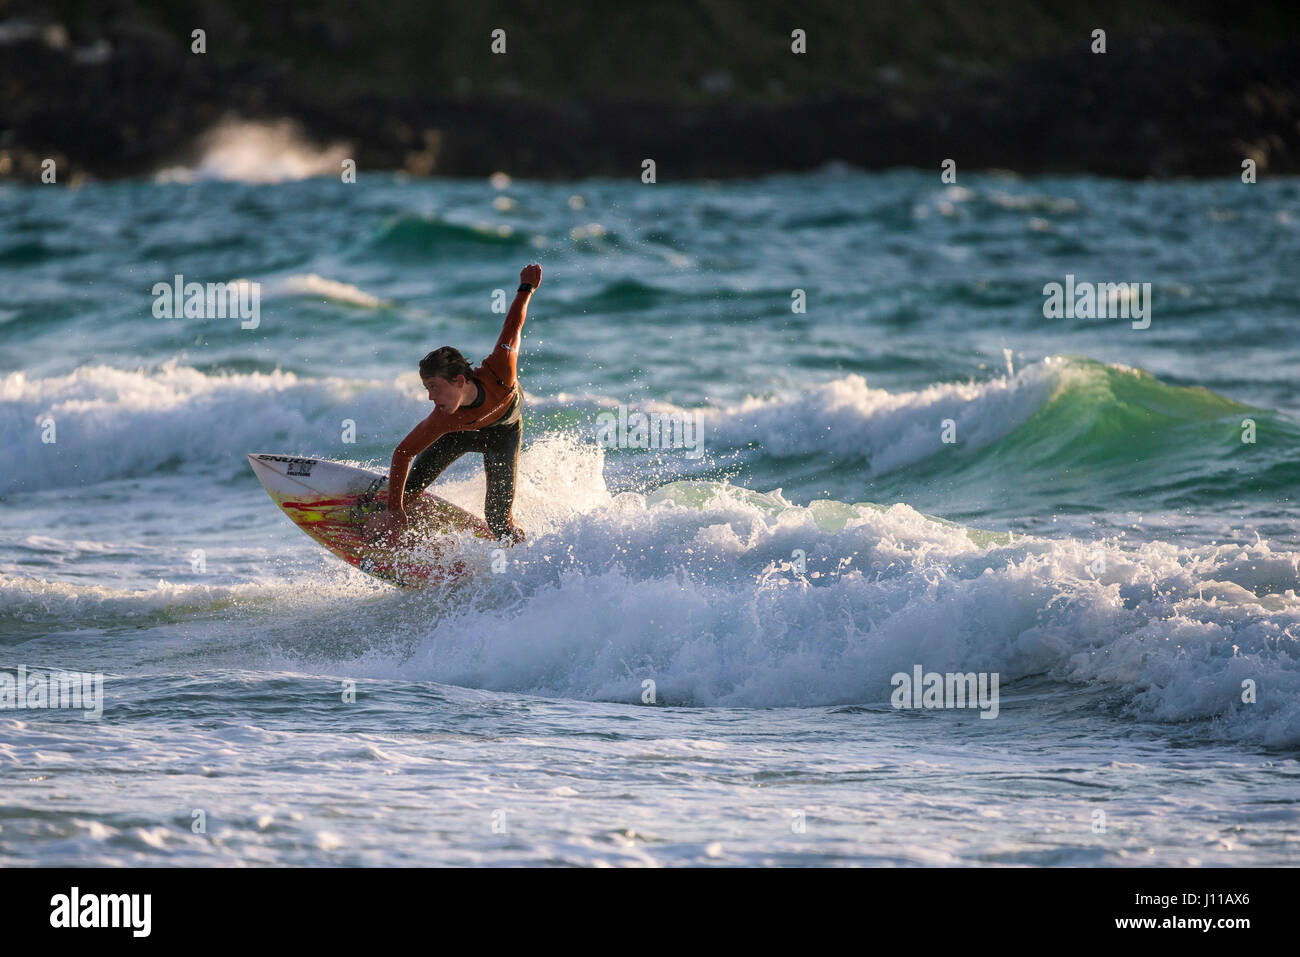 Surfen-UK; Surfer; Fistral; Cornwall; Welle; Surfbrett; Meer; Spray; Watersport; Am Abend; Körperliche Aktivität; Skill; Spektakuläre Action; Freizeit Aktivitäten Stockfoto